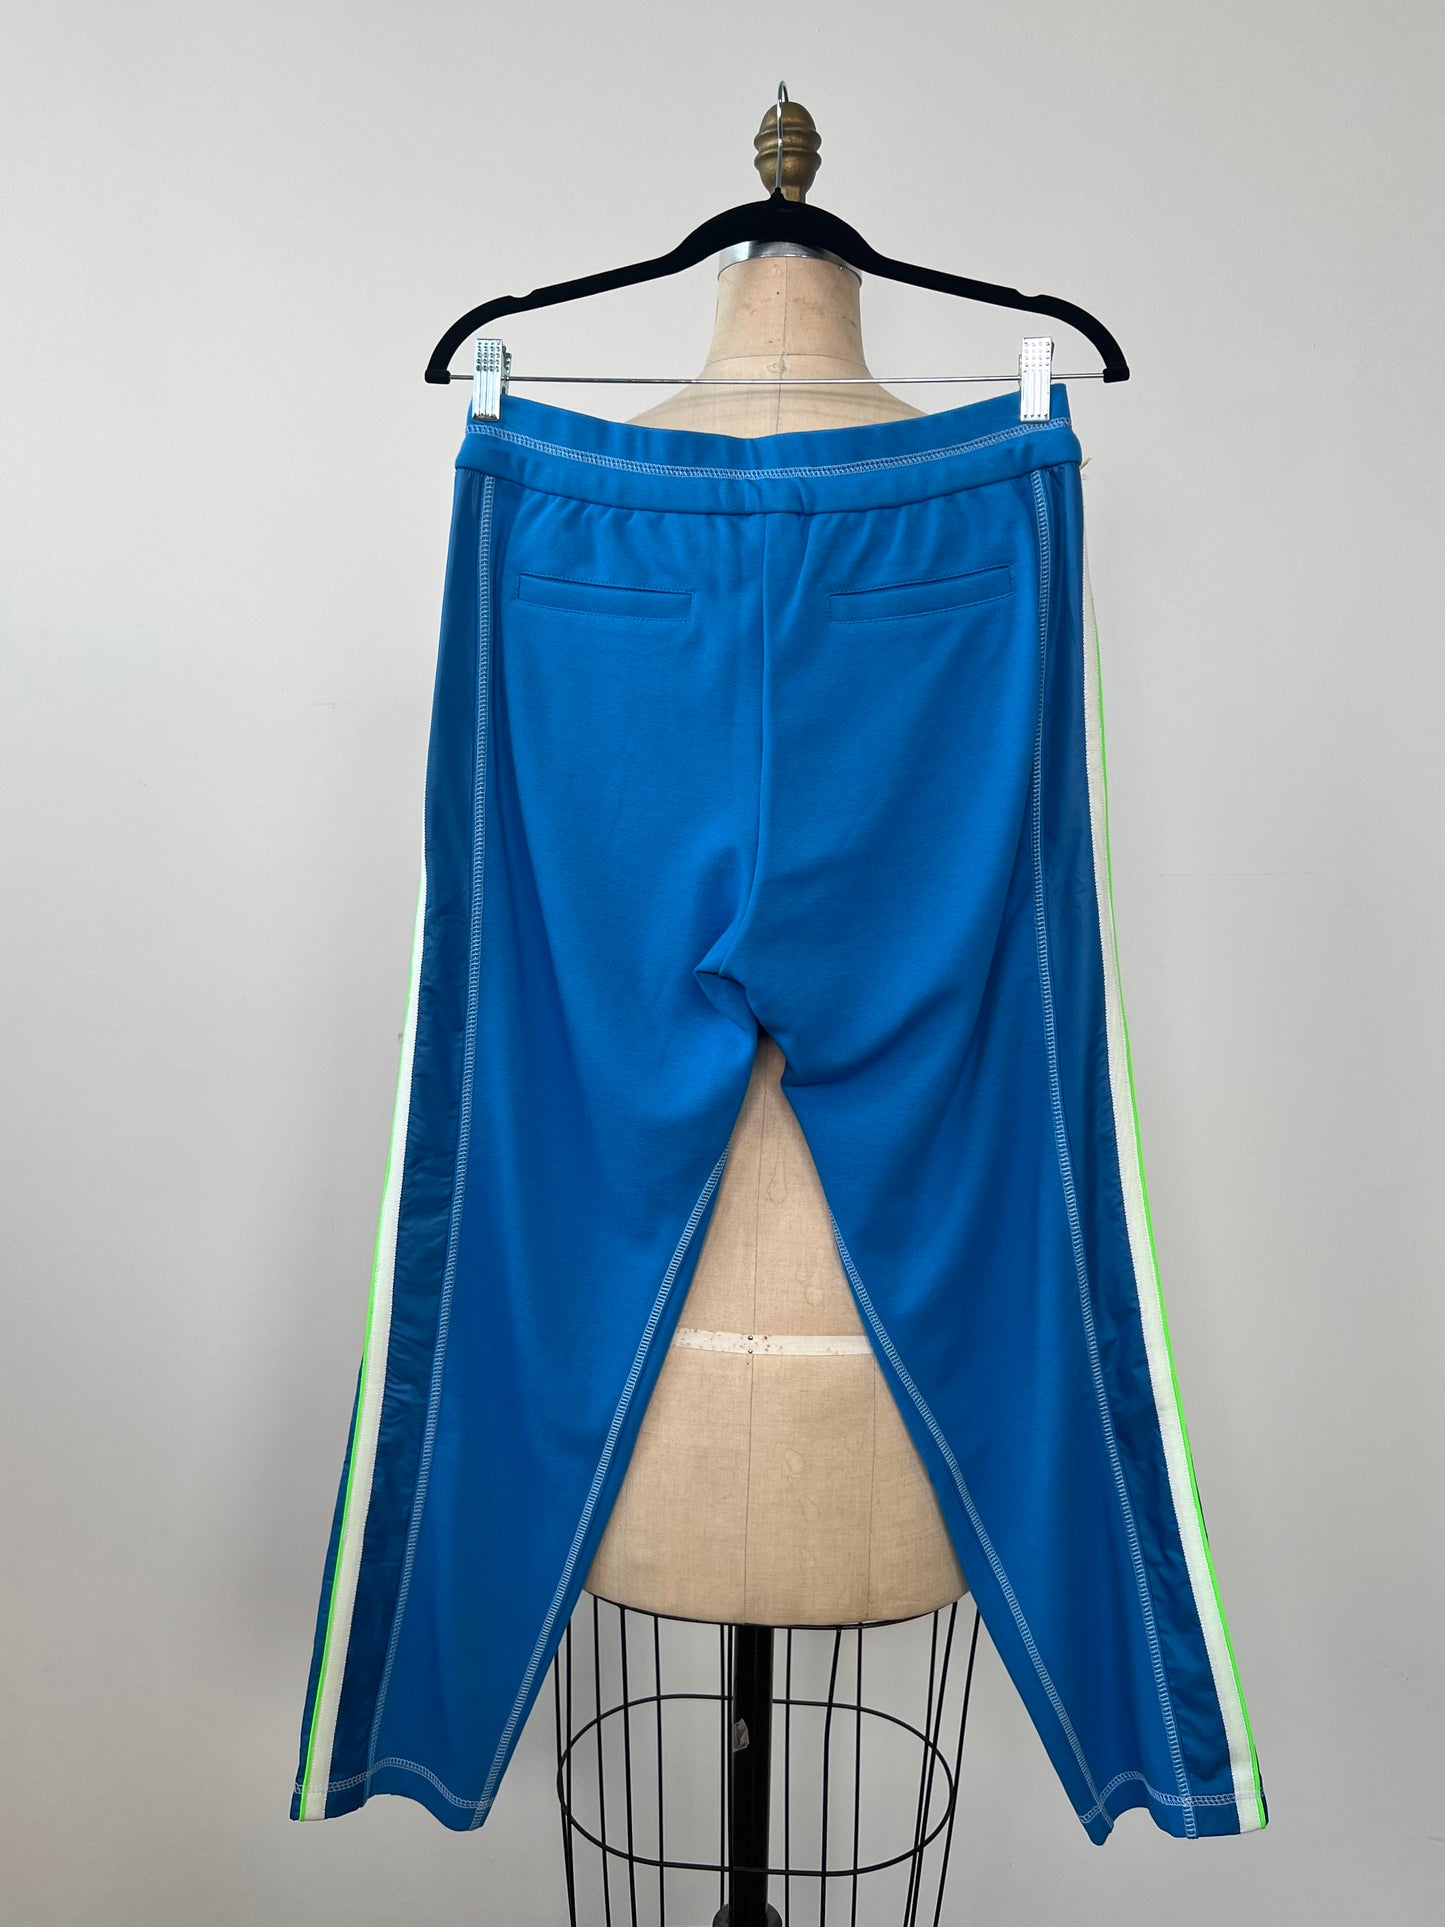 Pantalon jogger bleu vif à galons vert néon et blanc (6 et 8)